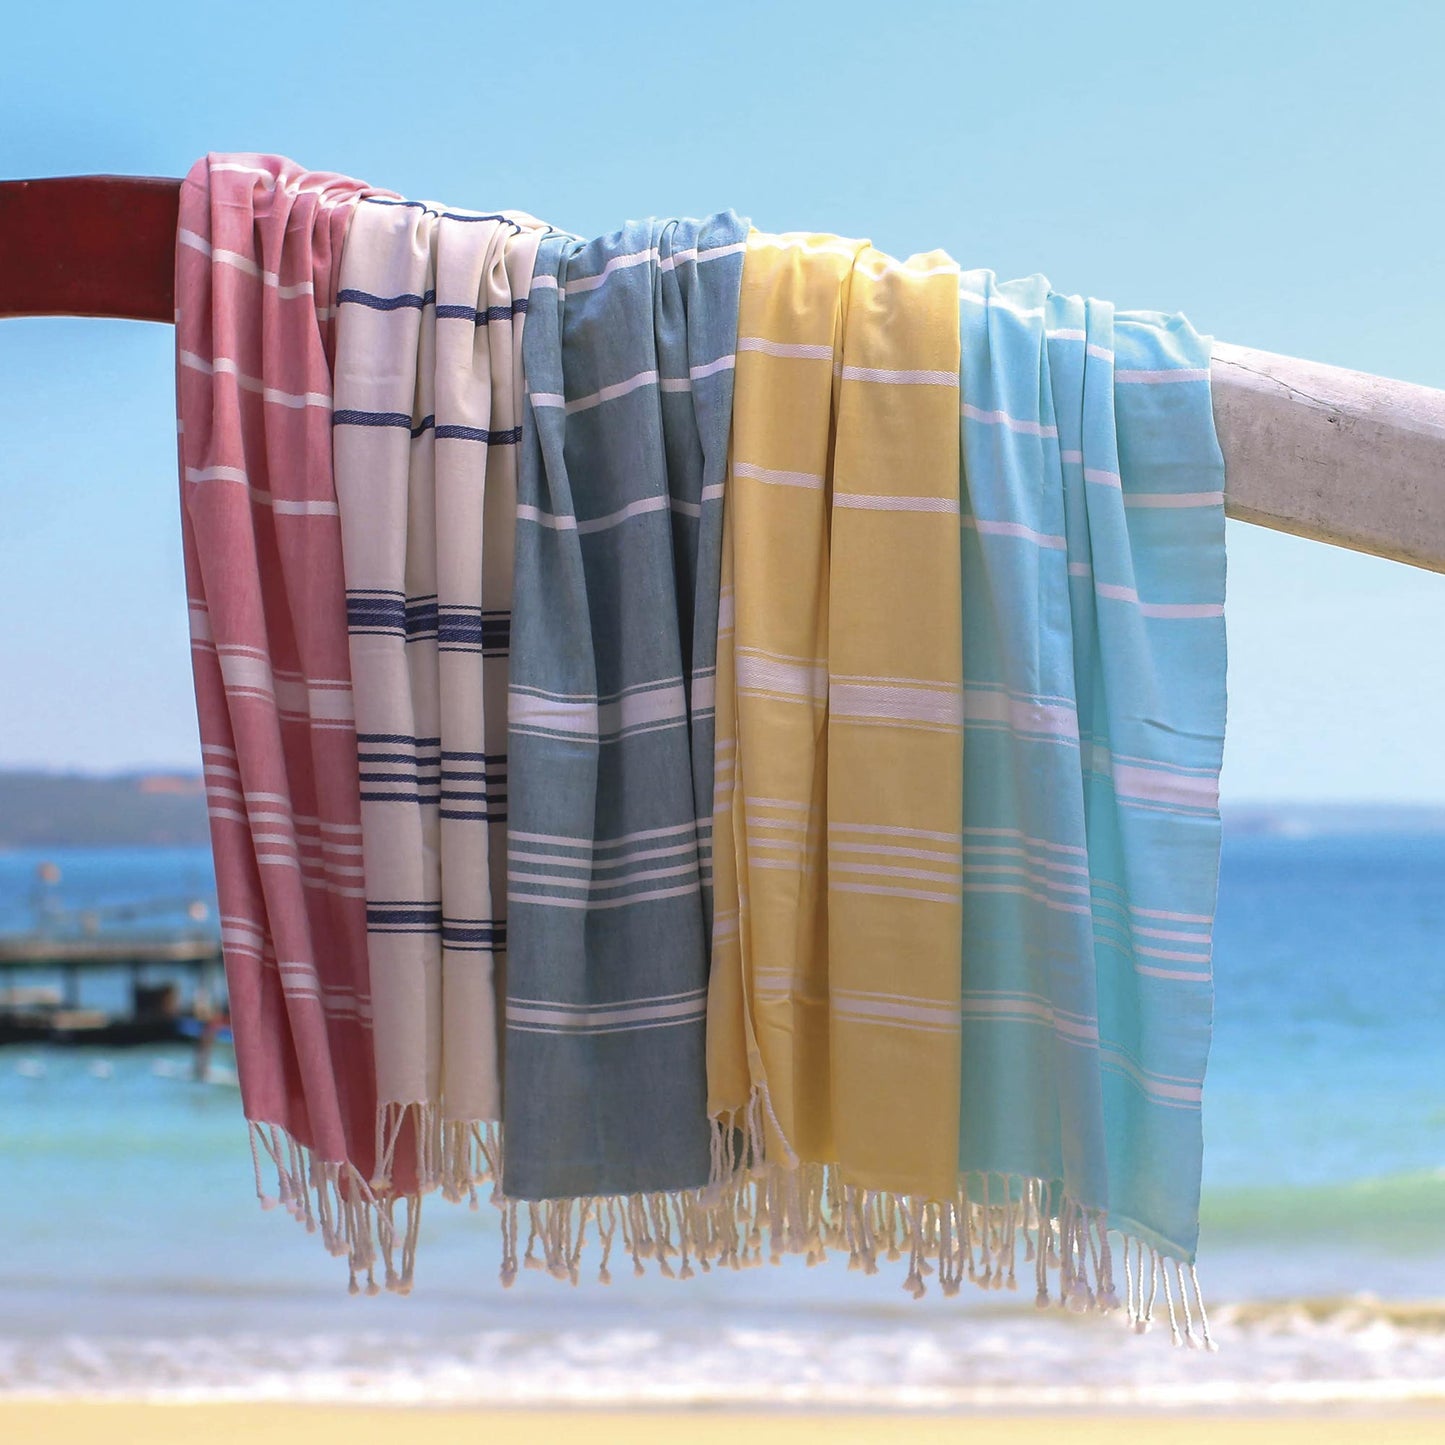 Sweet Relaxation in Snow White Snow White Cotton Beach Towel with Indigo Stripes